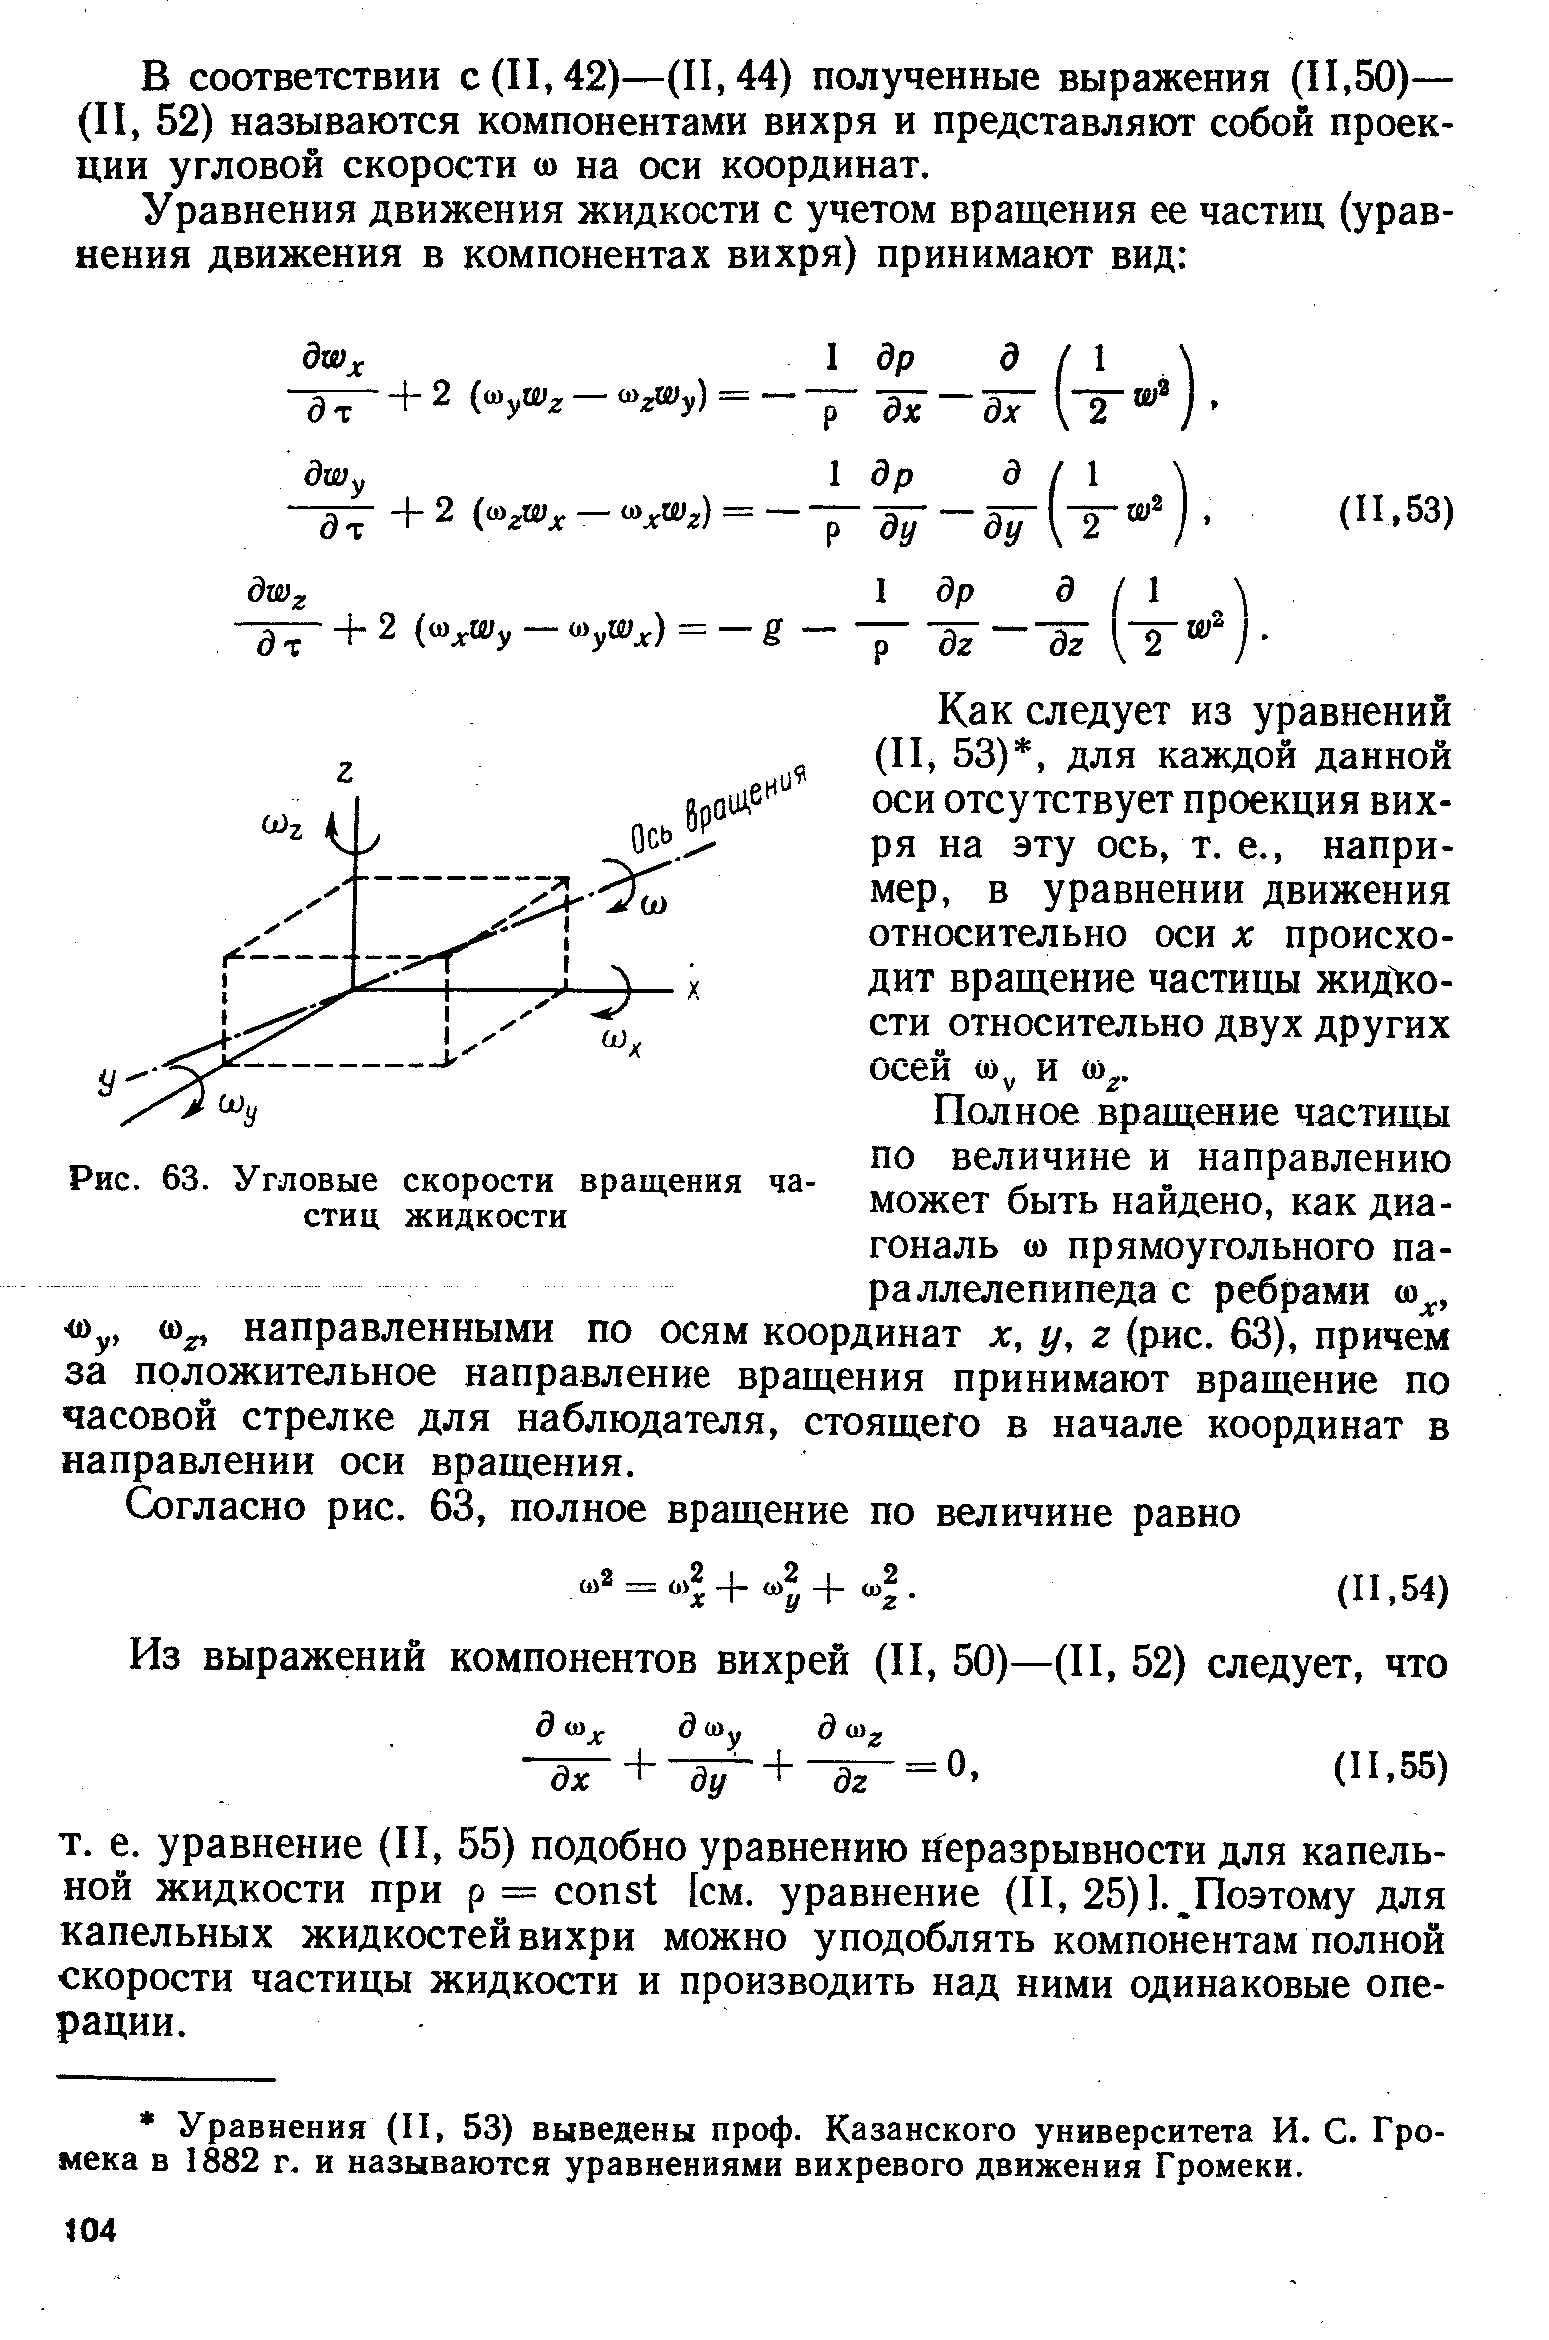 Как следует из уравнений (II, 53), для каждой данной оси отсутствует проекция вихря на эту ось, т. е., например, в уравнении движения относительно оси х происходит вращение частицы жид1 о-сти относительно двух других осей (0 , и 0) .